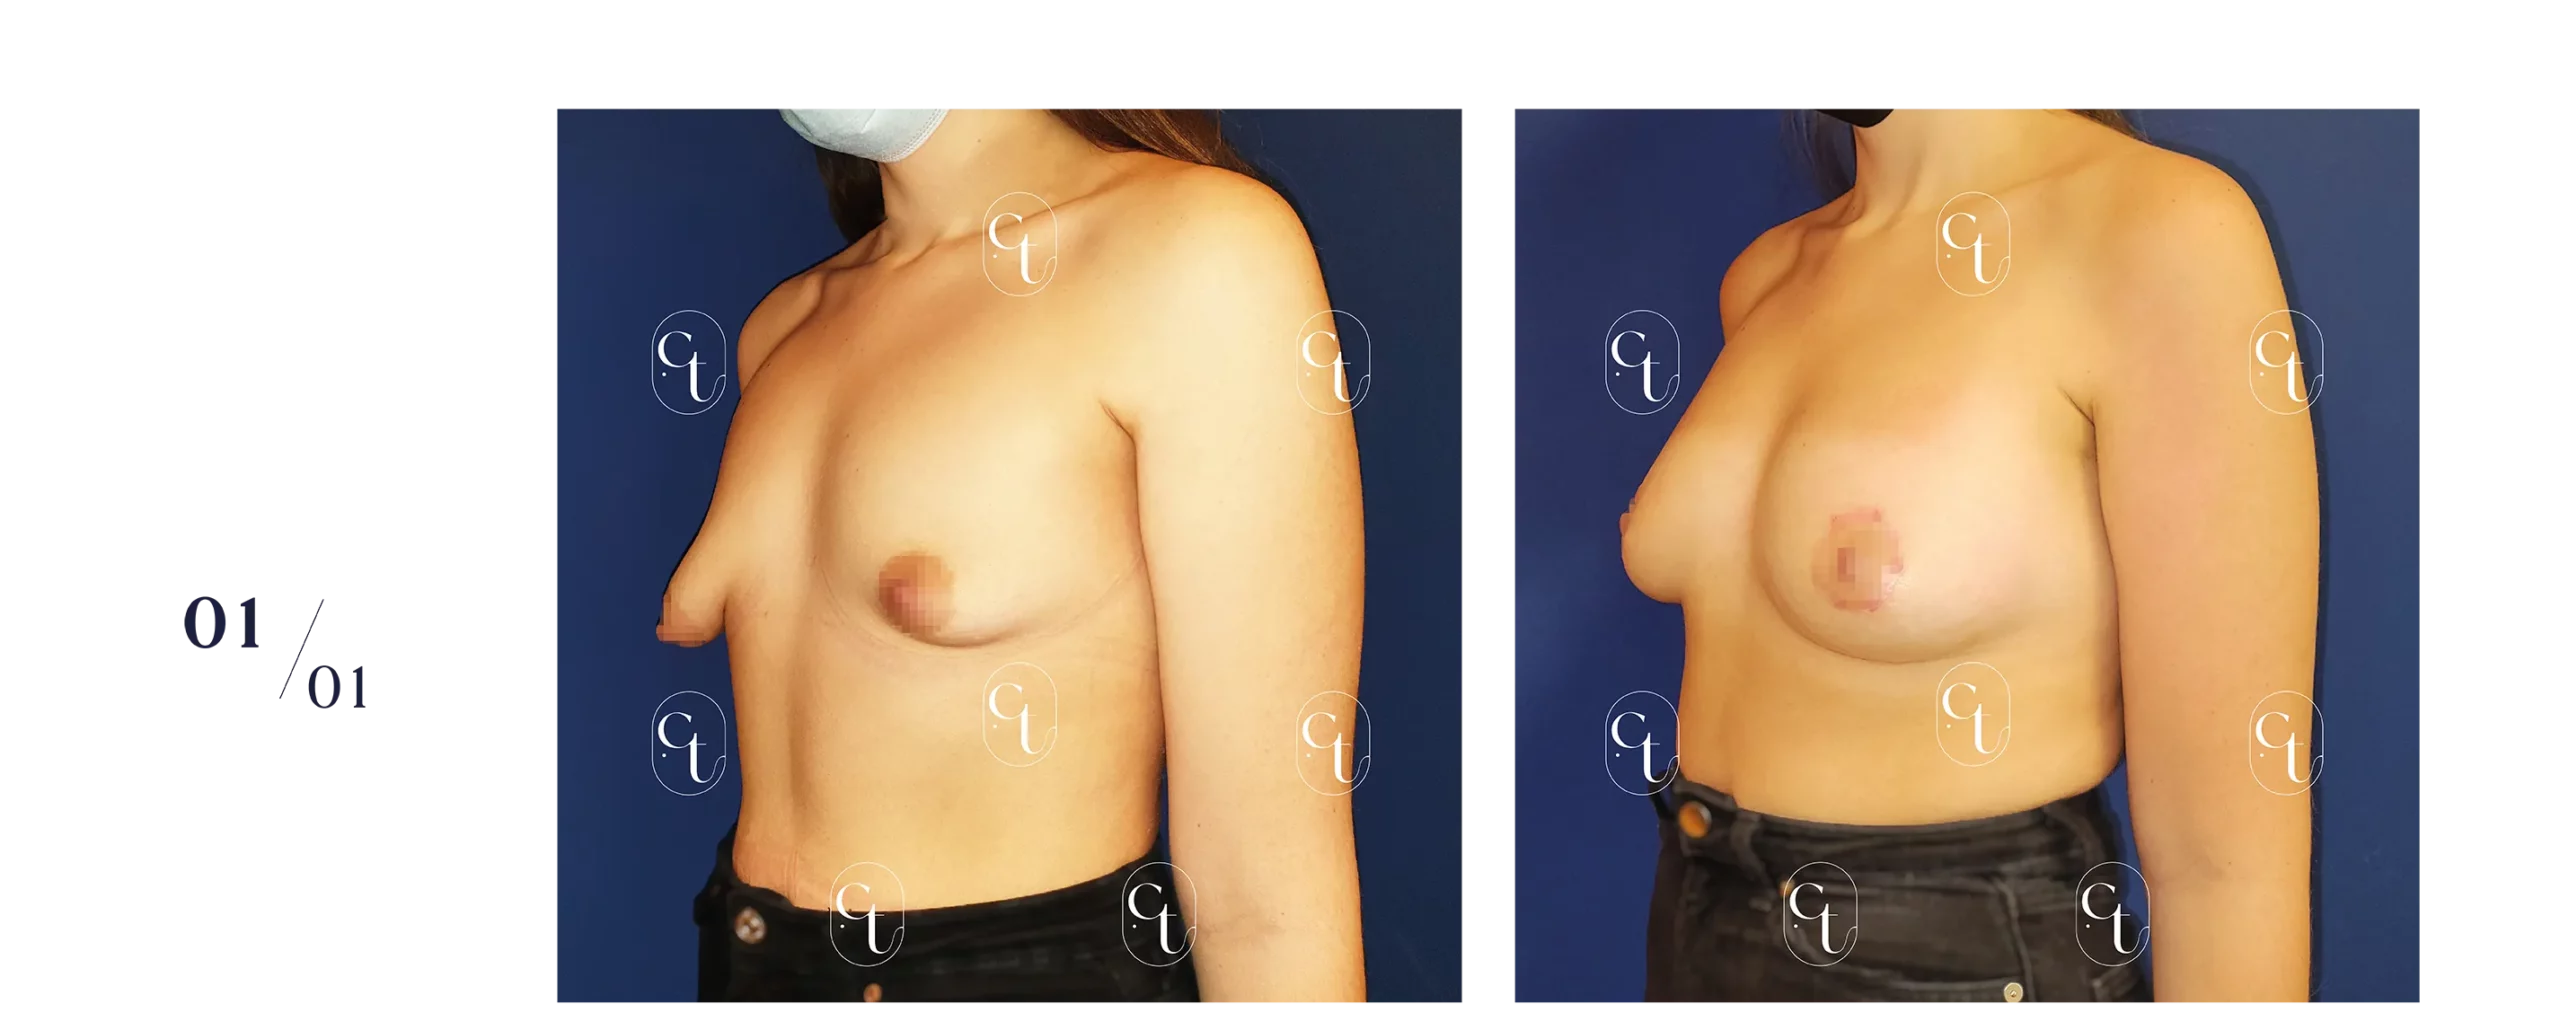 Patiente présentant des seins tubéreux asymétriques. La prise en charge se fait généralement en plusieurs étapes. Elle associe des gestes pour replacer les aréoles, et des séances de lipofilling afin de symétriser/augmenter le volume mammaire.